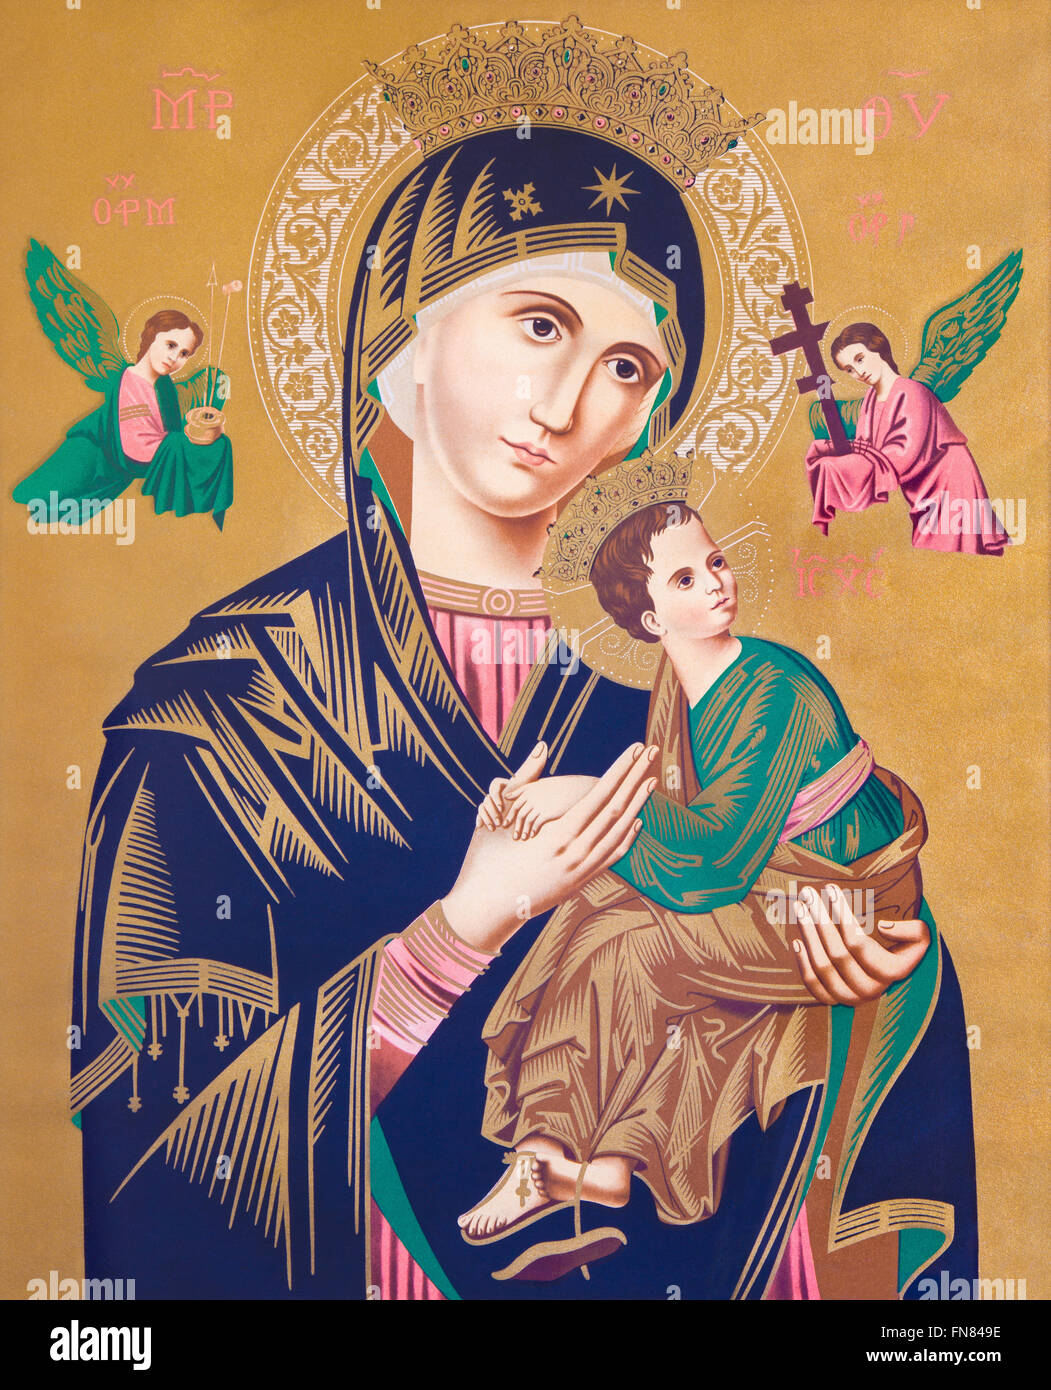 SEBECHLEBY, Slovacchia - 26 febbraio 2016: cattolica tipica immagine della Madonna con il bambino (Nostra Signora del Perpetuo Soccorso). Foto Stock